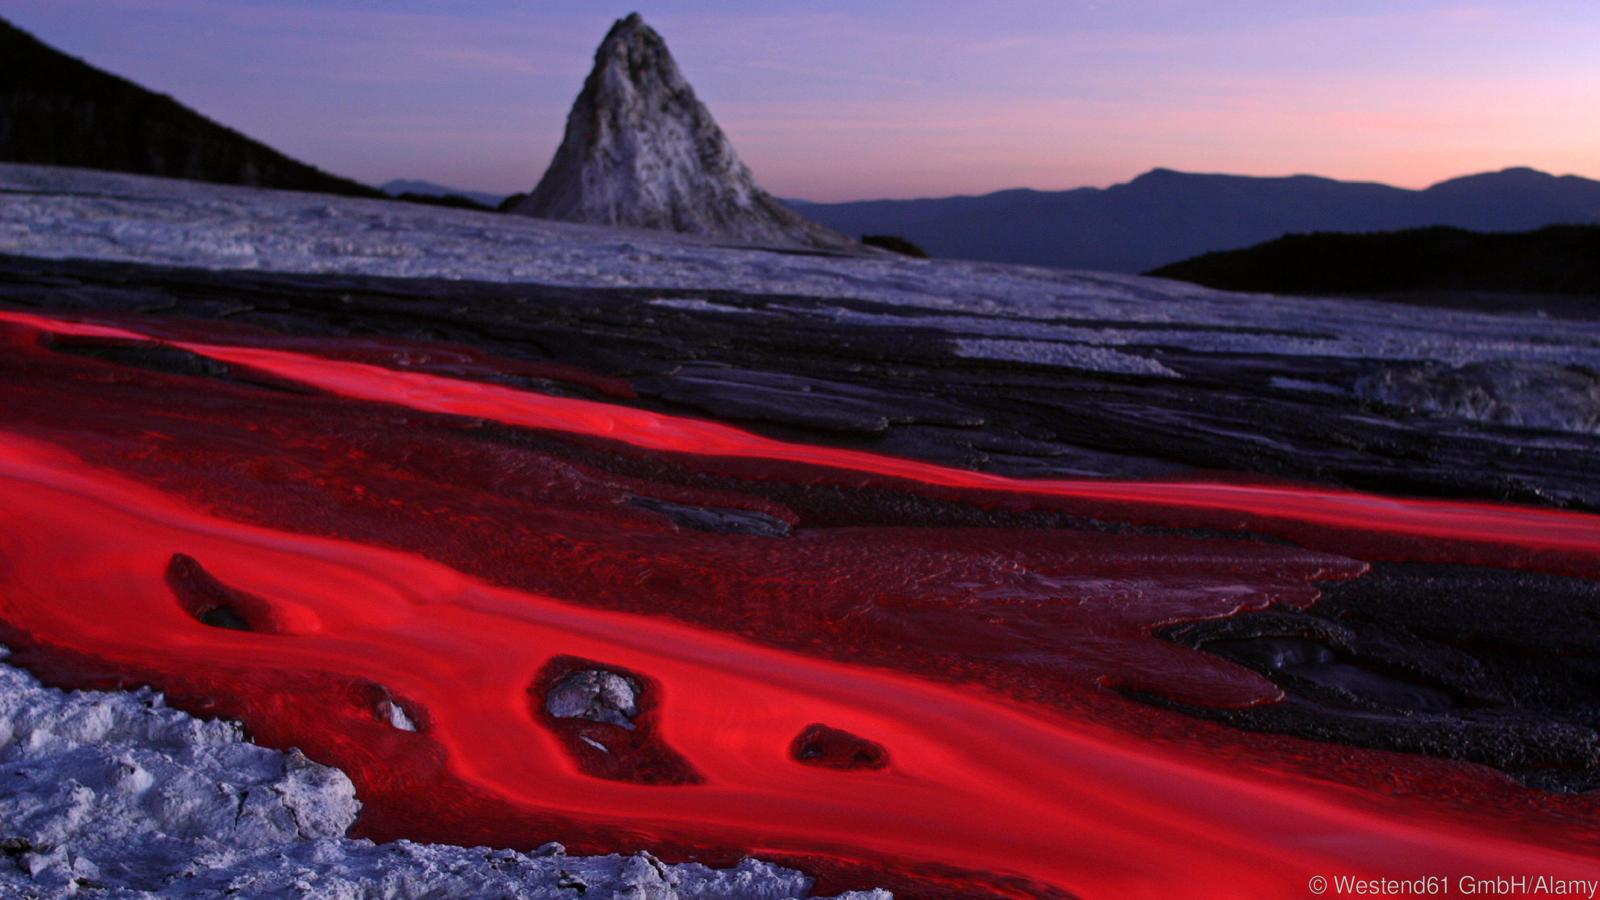 Tanzania, Ol Doinyo Lengai - soda lava flow at dusk